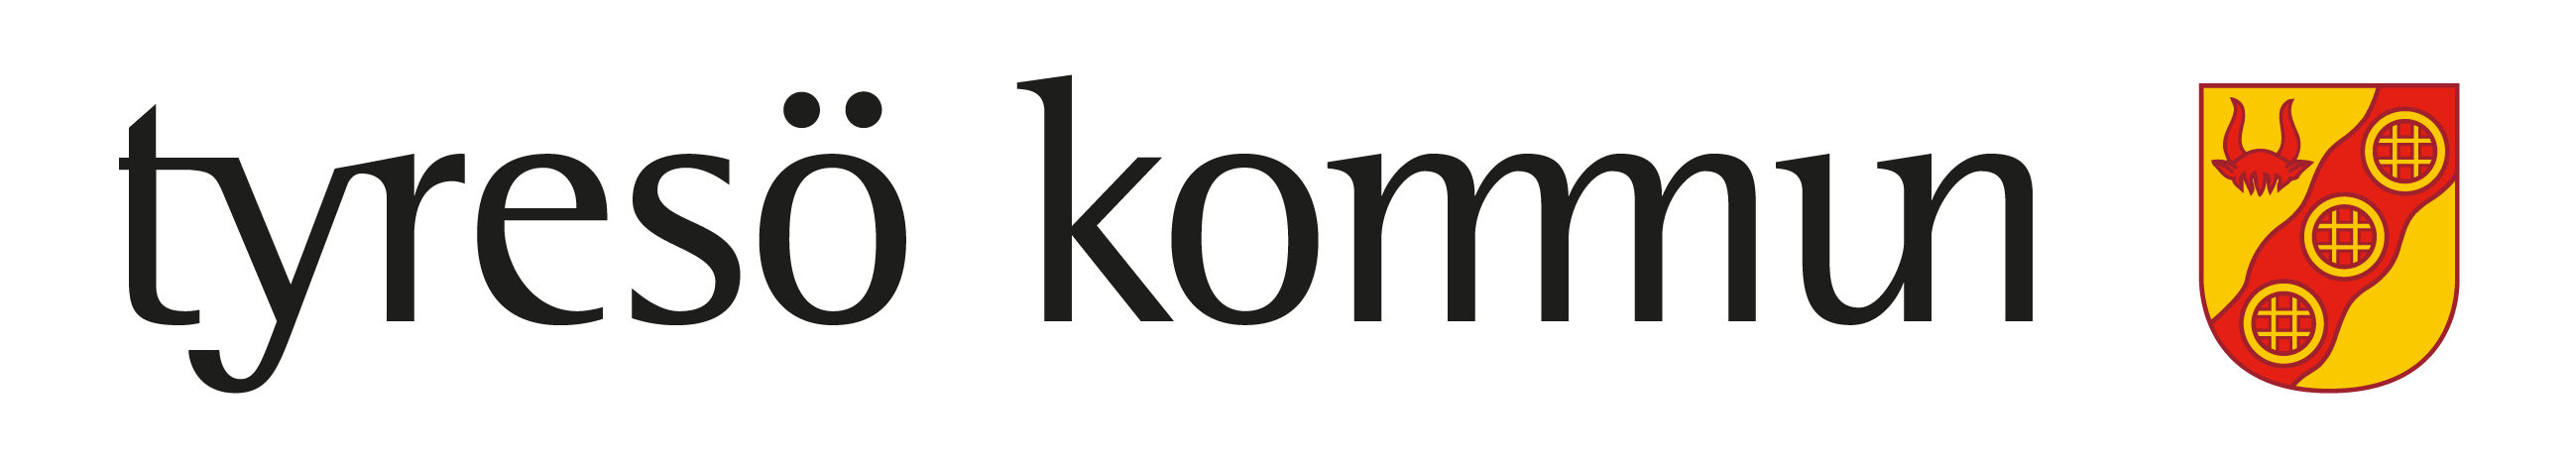 Tyresö kommun - Logotyp